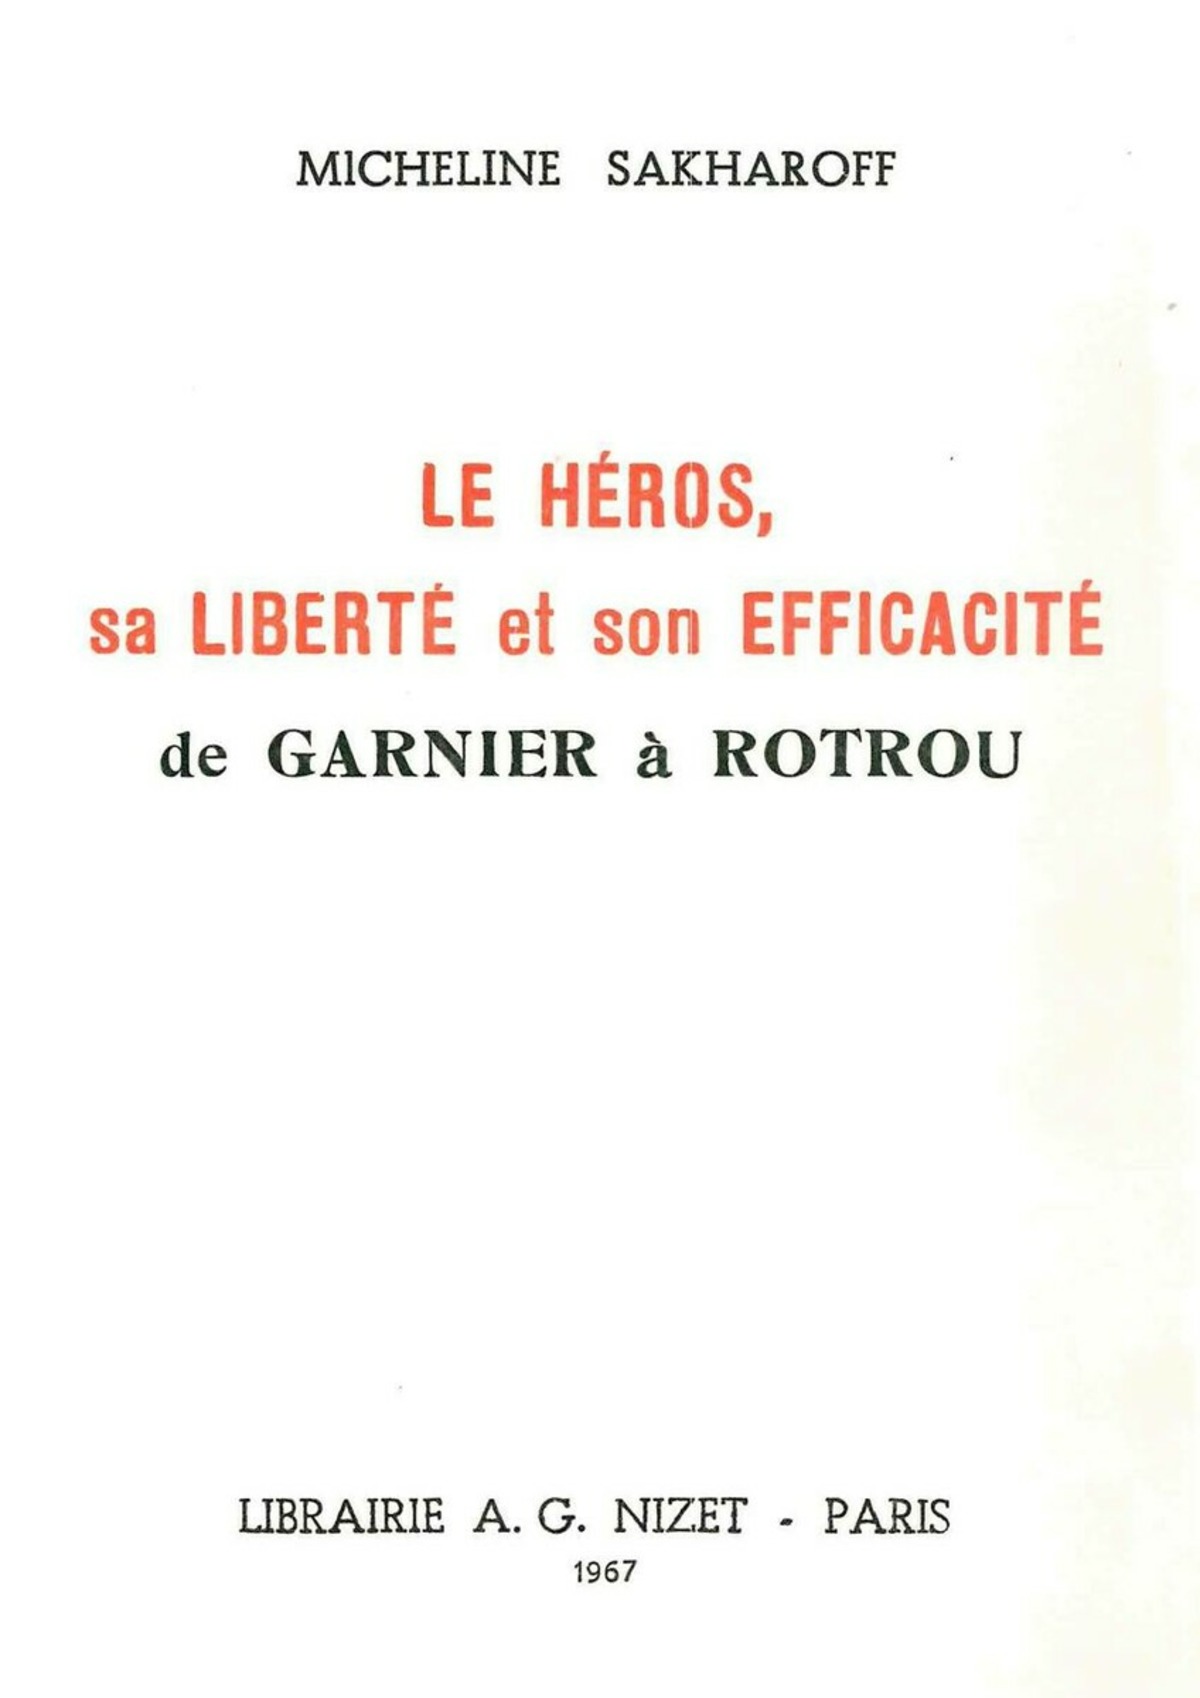 Le Héros, sa liberté et son efficacité, de Garnier à Rotrou